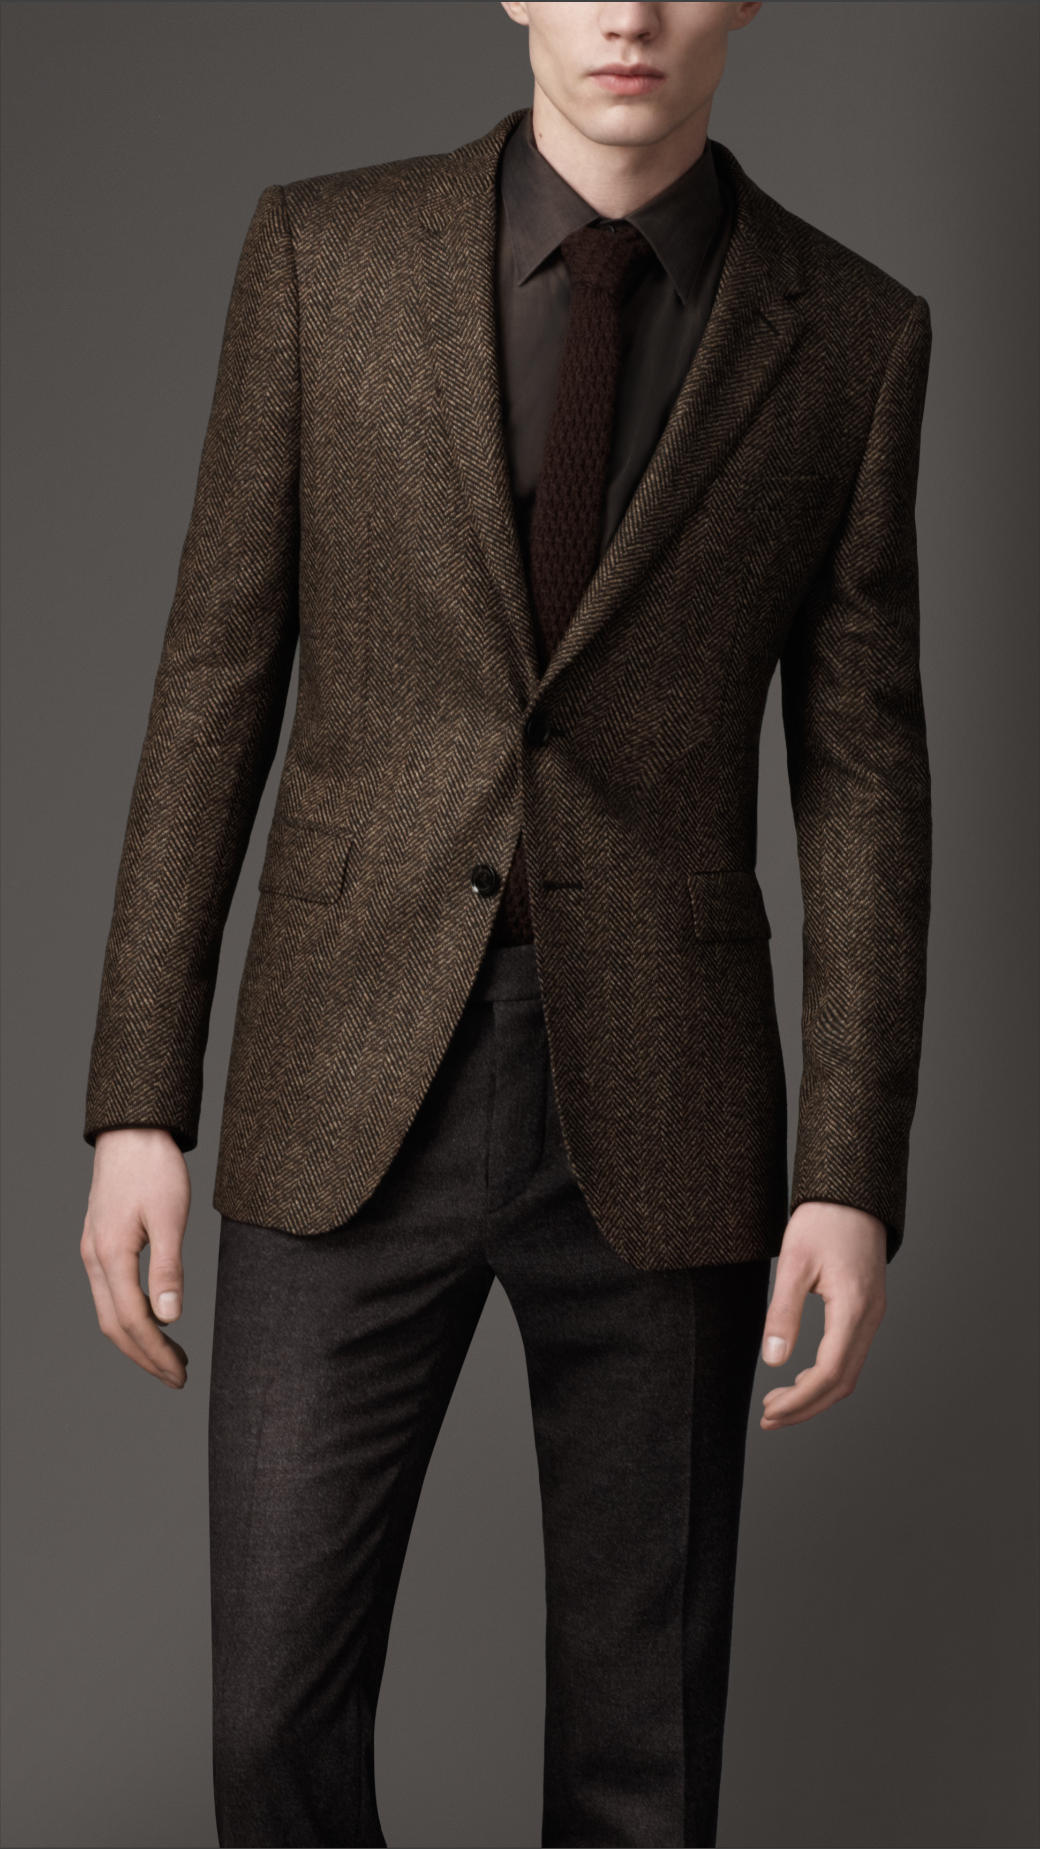 Burberry Slim Fit Tweed Jacket in Brown for Men - Lyst